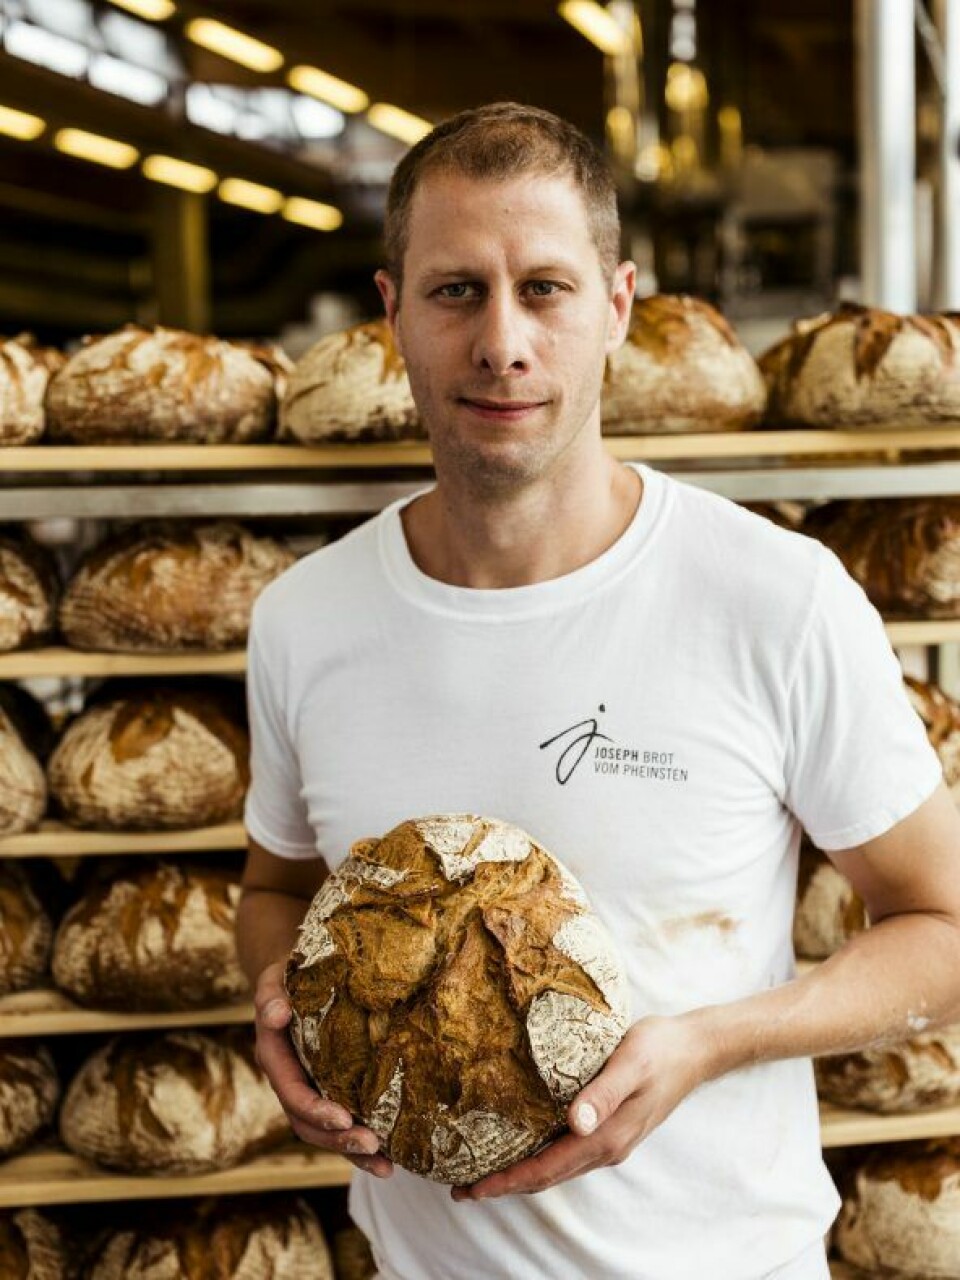 Joseph Weghaupt driver den populære østerrikske bakerikjeden Joseph Brot. Foto: Joseph Brot